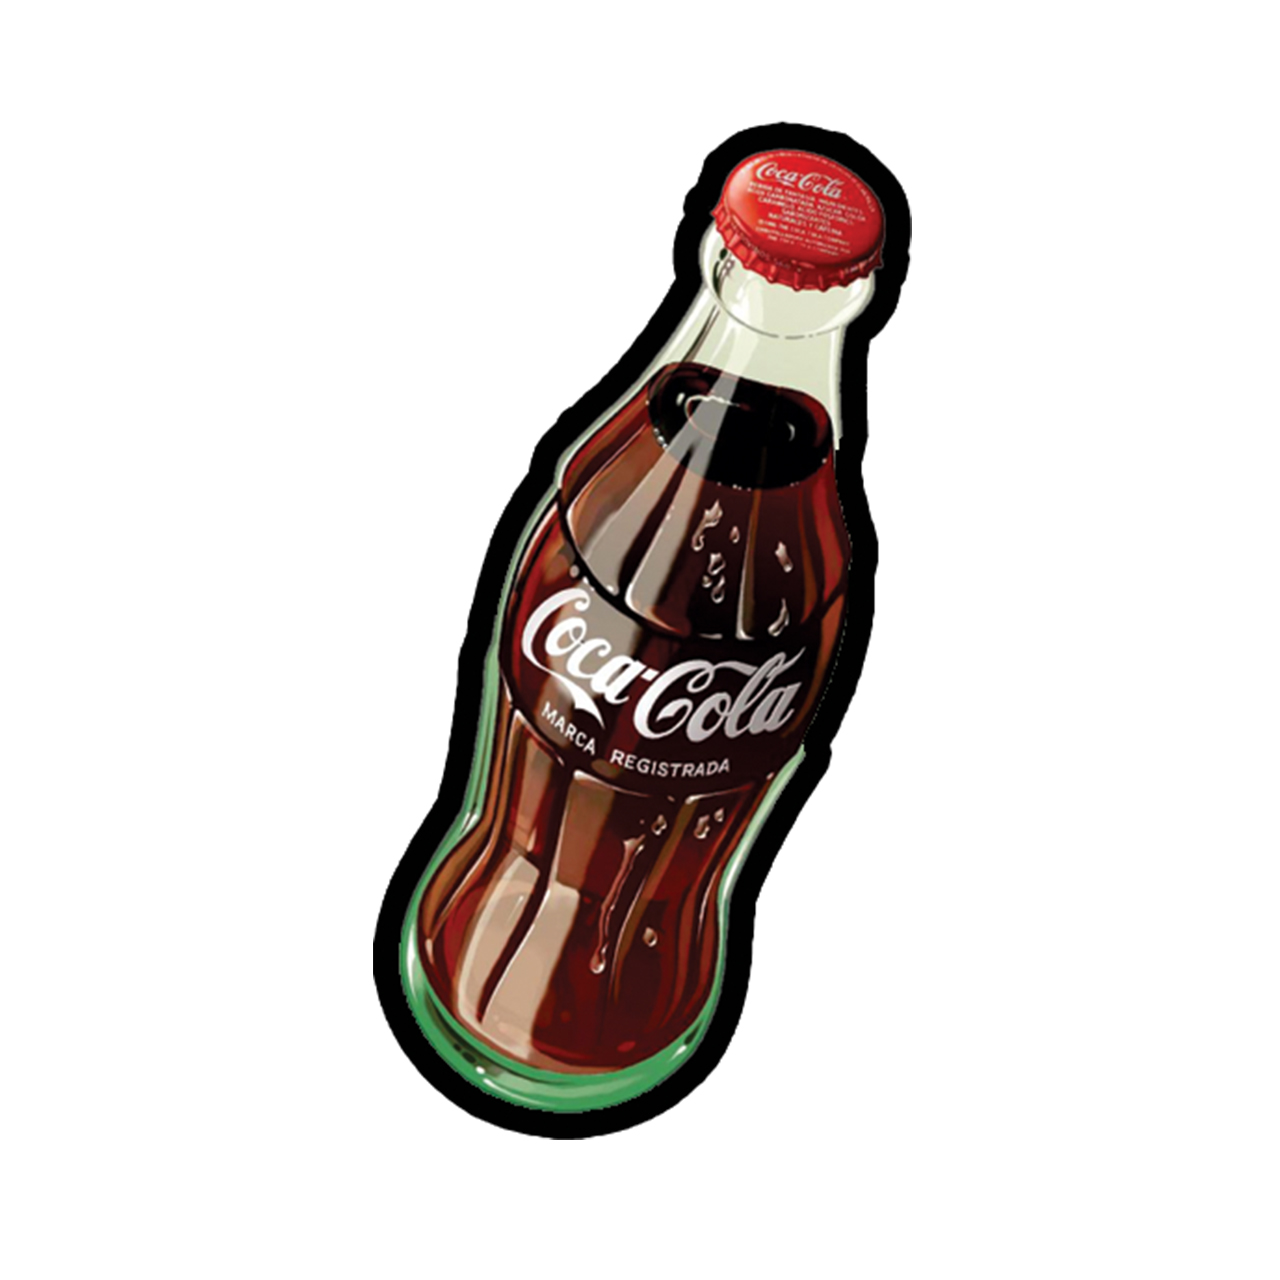 استیکر طرح Coca Cola2